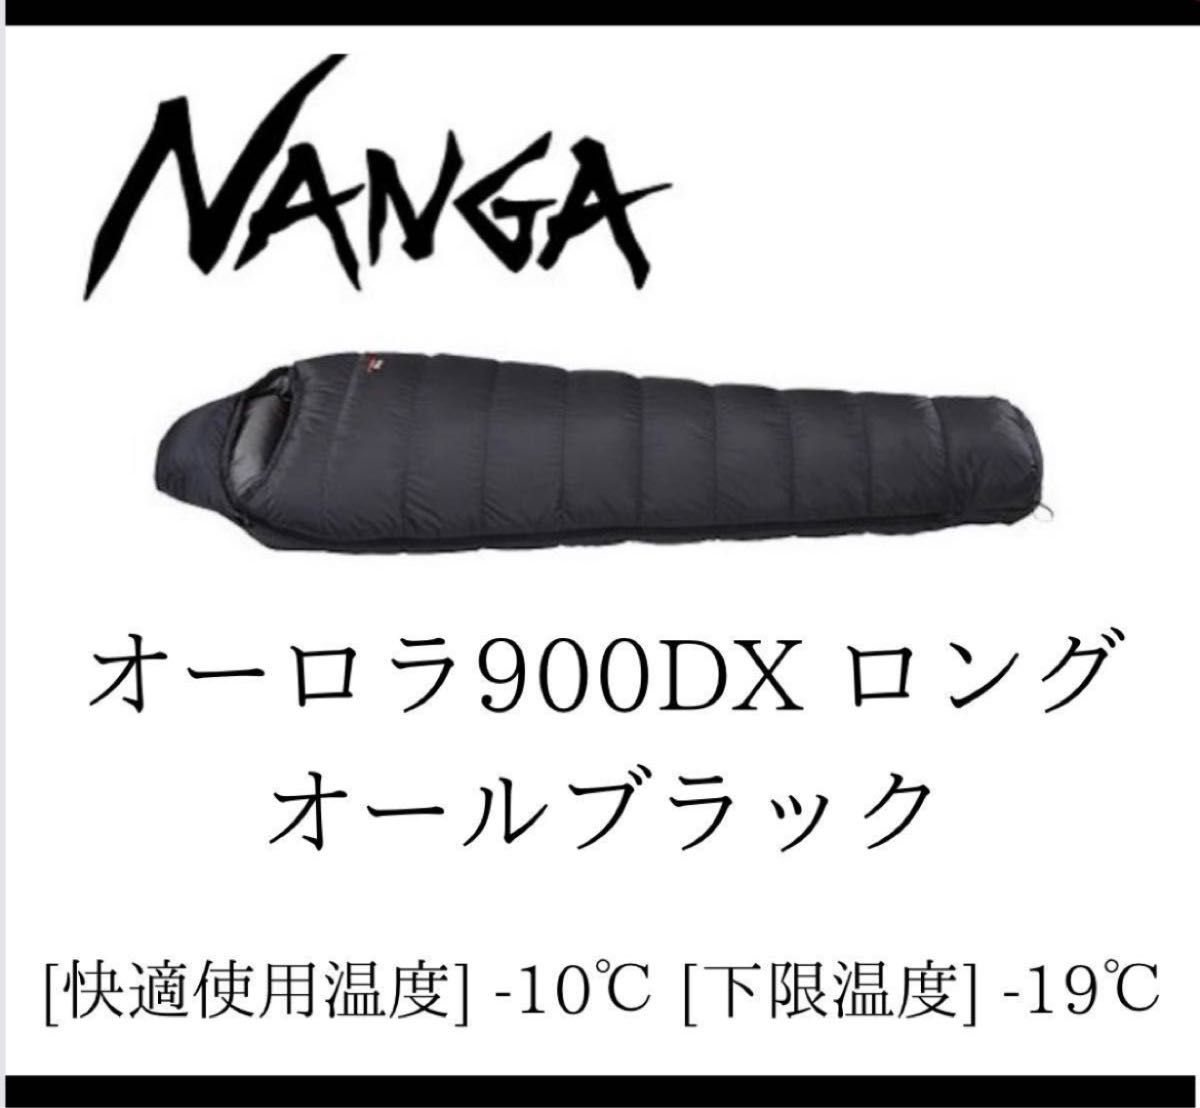 新品 オーロラ900DX ロング nanga ナンガ 山渓 オールブラック-